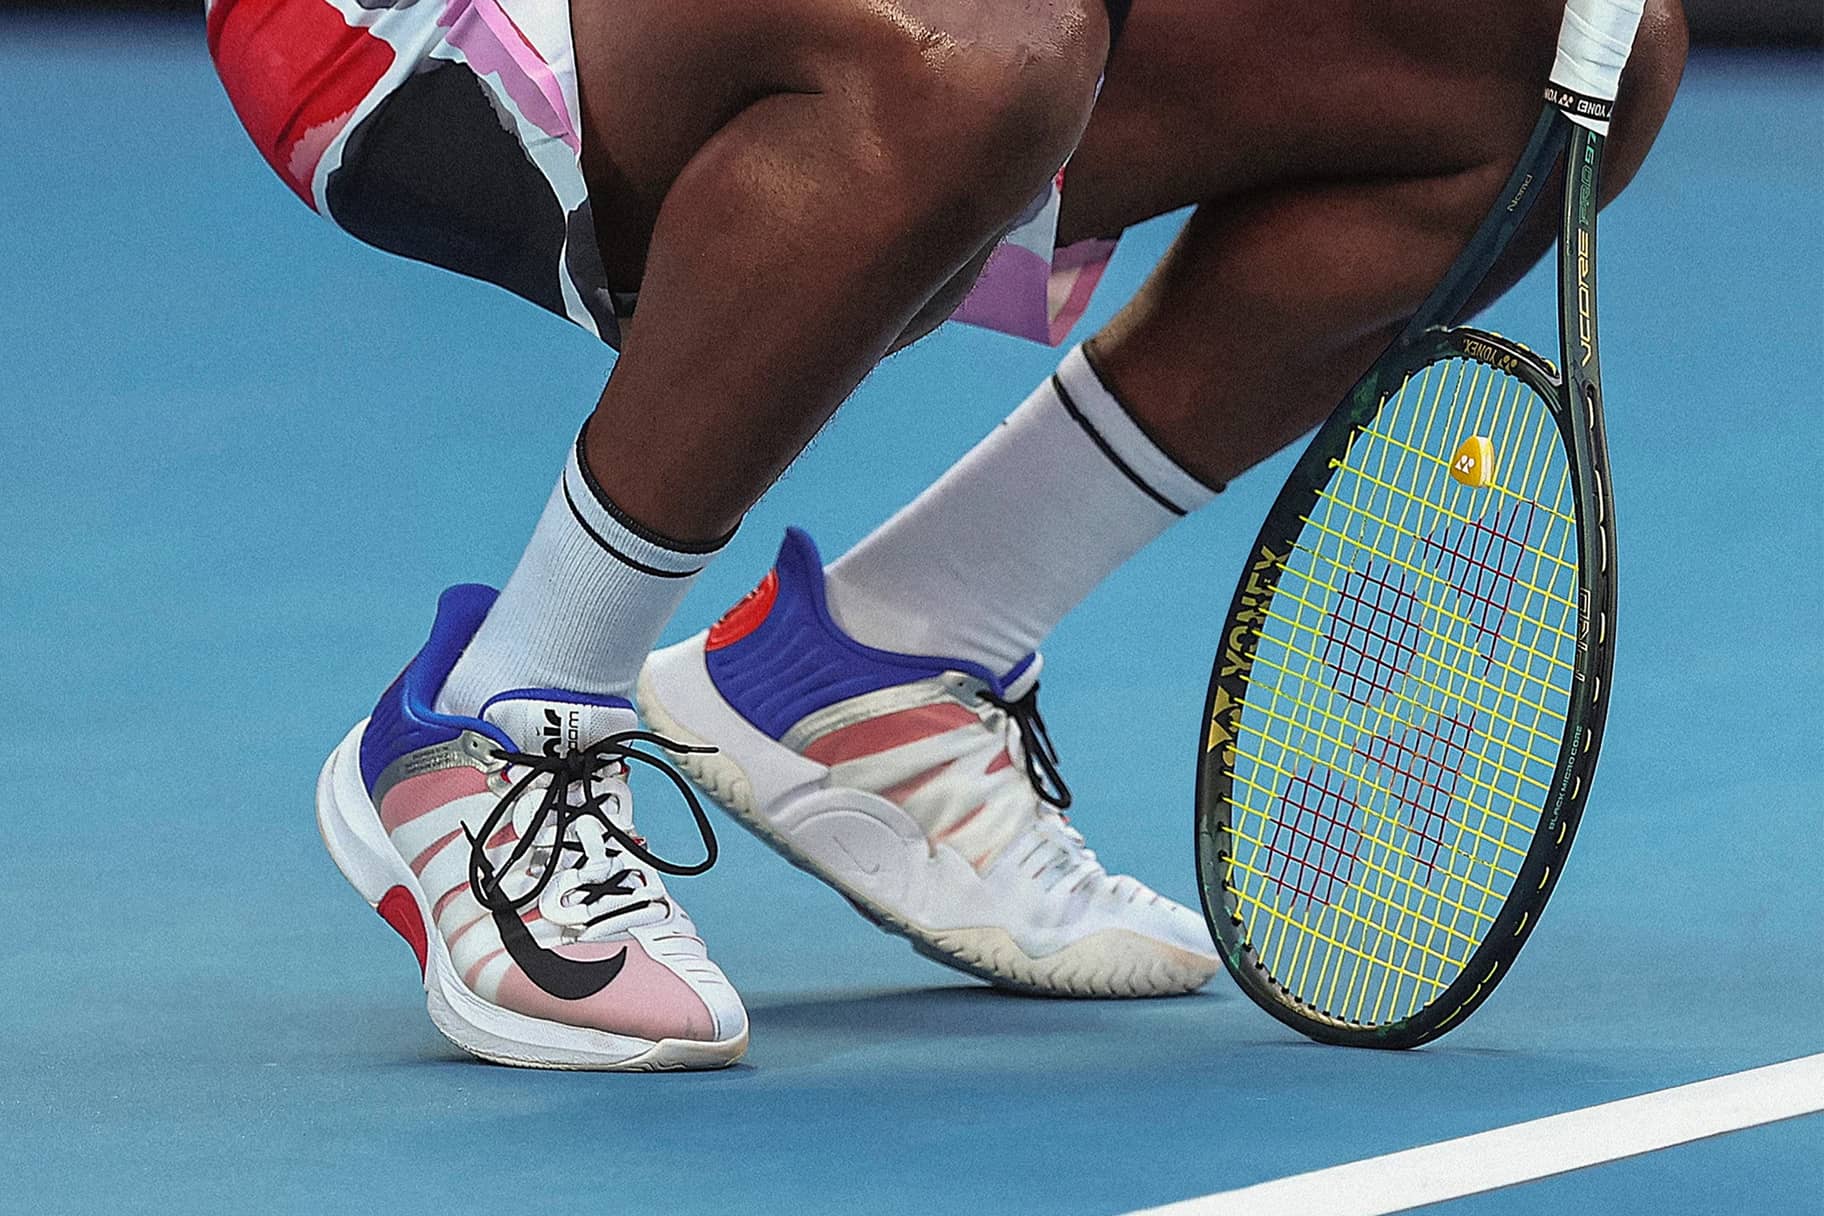 دبدوب ازرق Tennis Shoes & Sneakers. Nike.com دبدوب ازرق